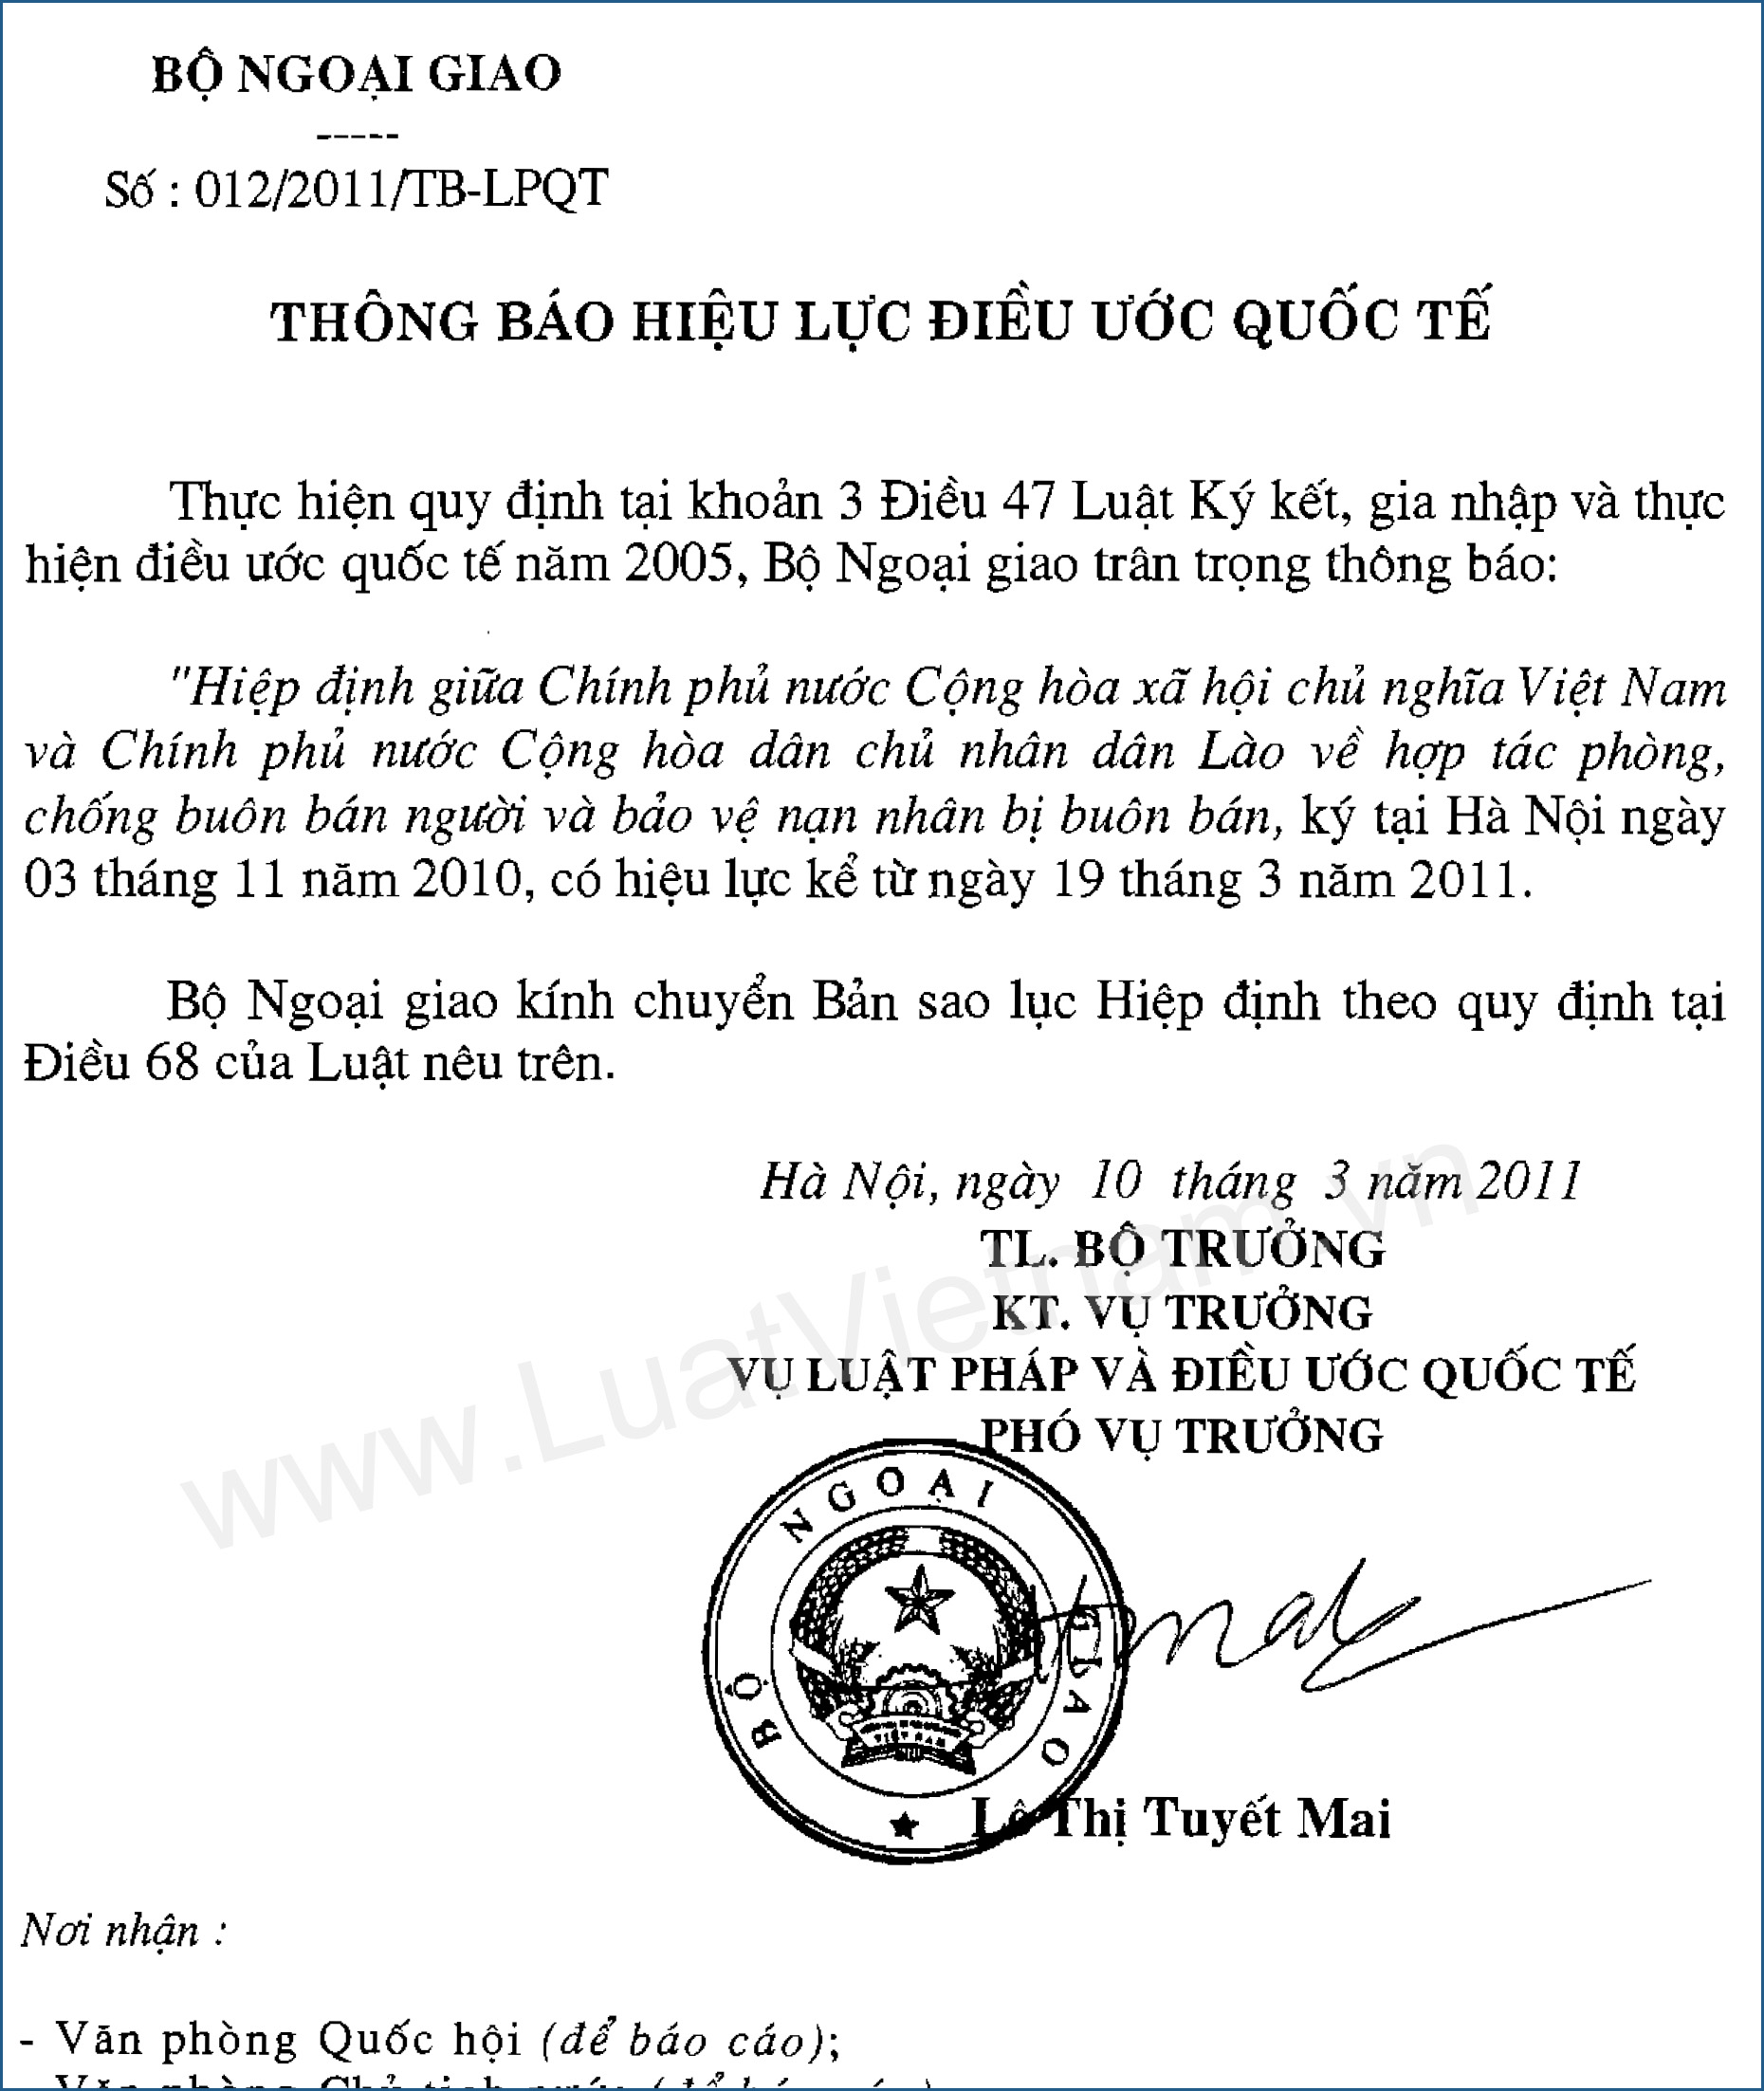 Hiệp định giữa Việt Nam và Lào về hợp tác phòng, chống buôn bán người và bảo vệ nạn nhân bị buôn bán